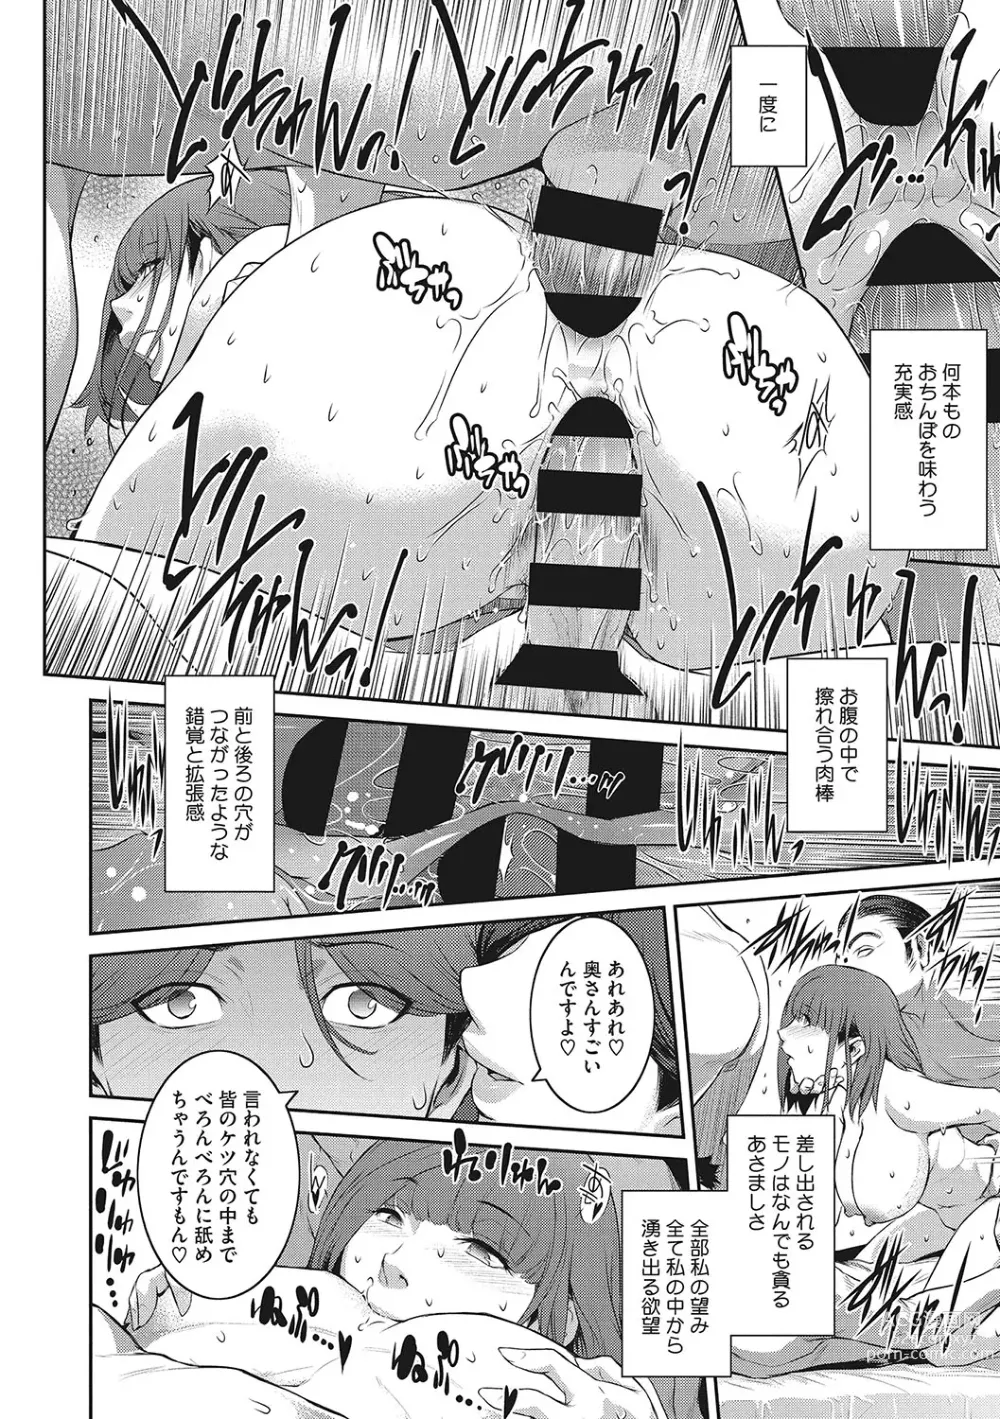 Page 171 of manga Genwaku